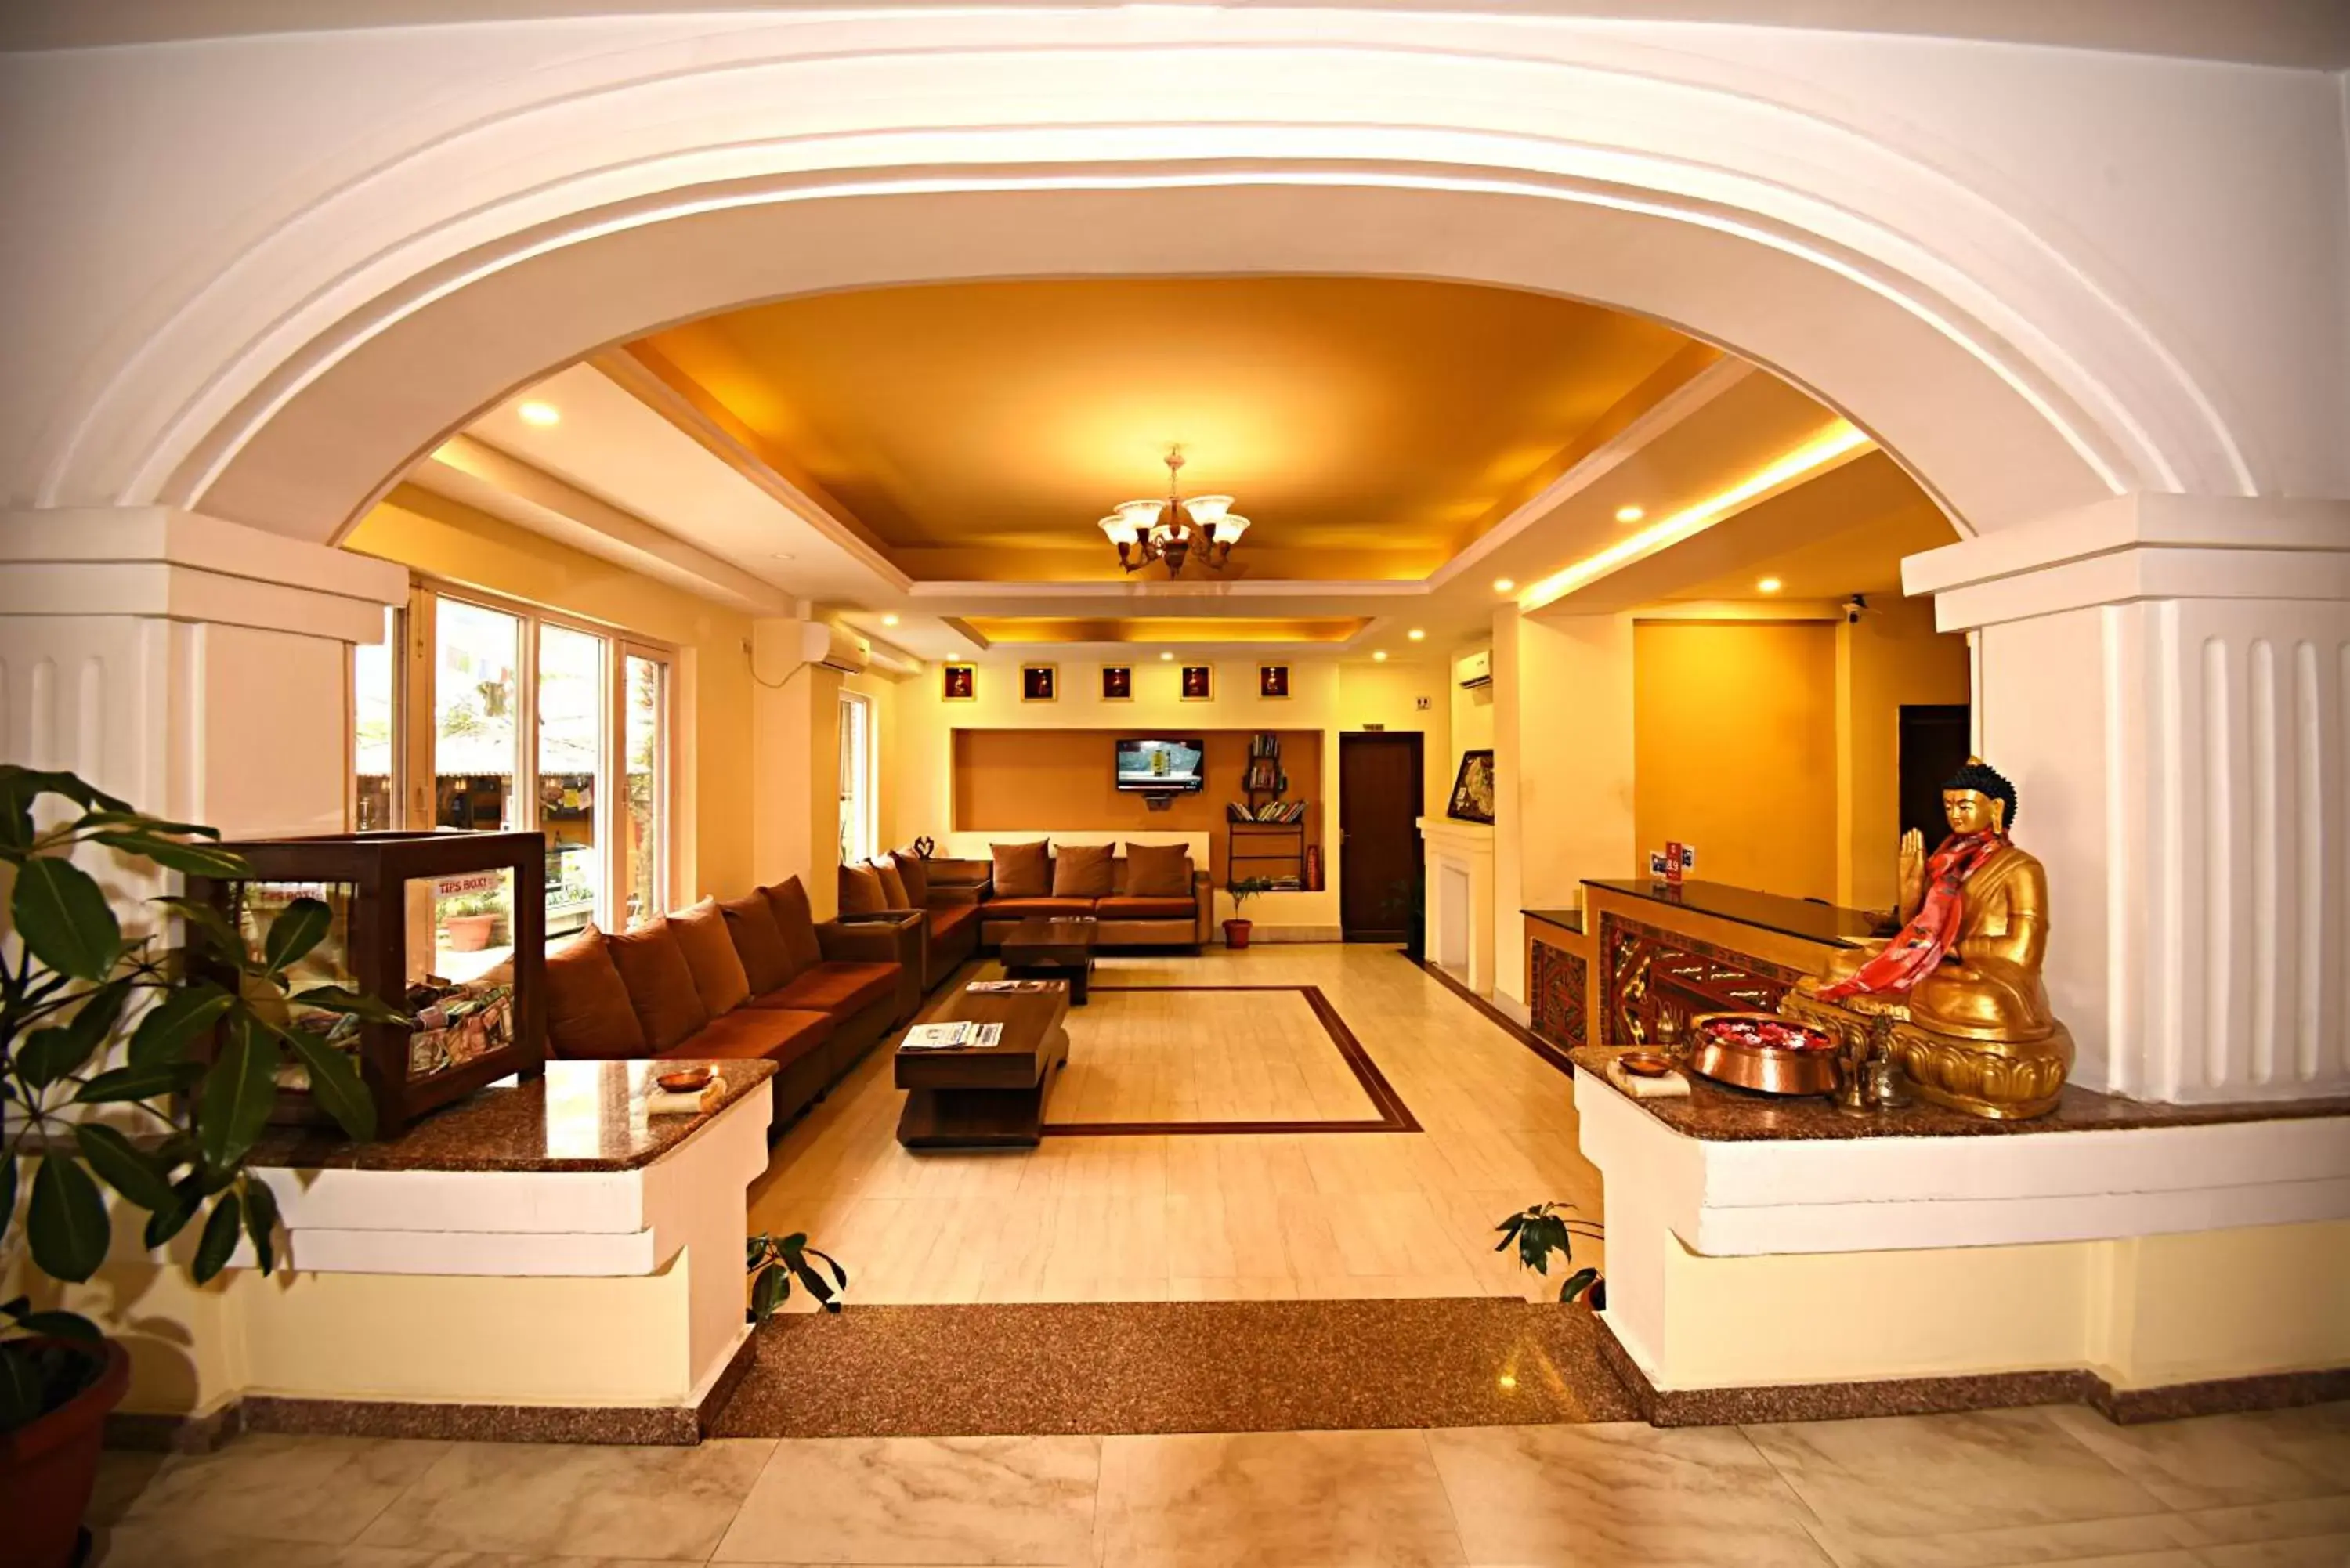 Lobby or reception in DOM Himalaya Hotel